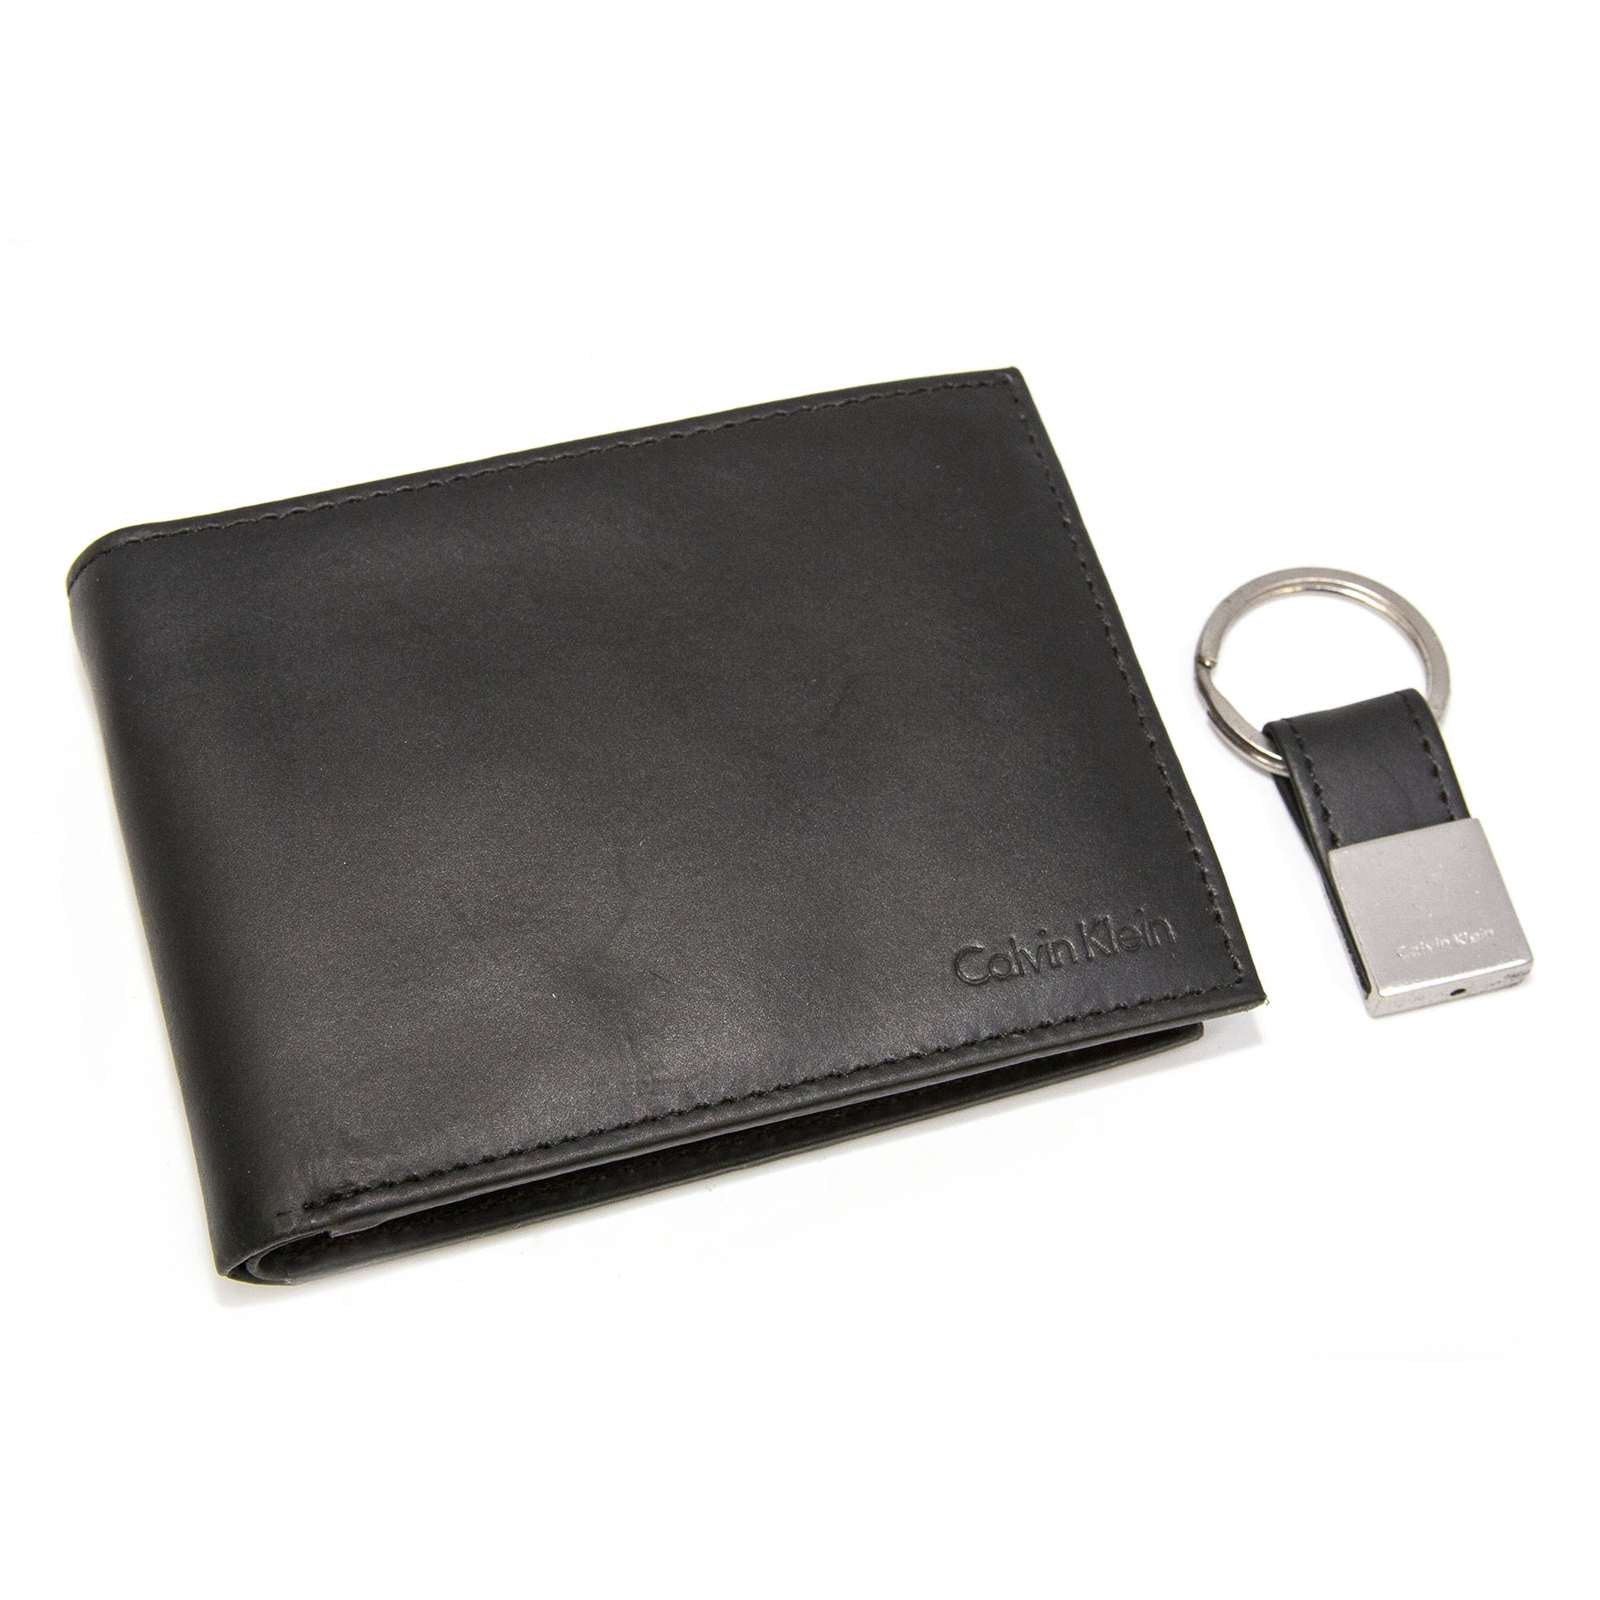 Calvin Klein Men Bookfold Wallet And Key Fob Set